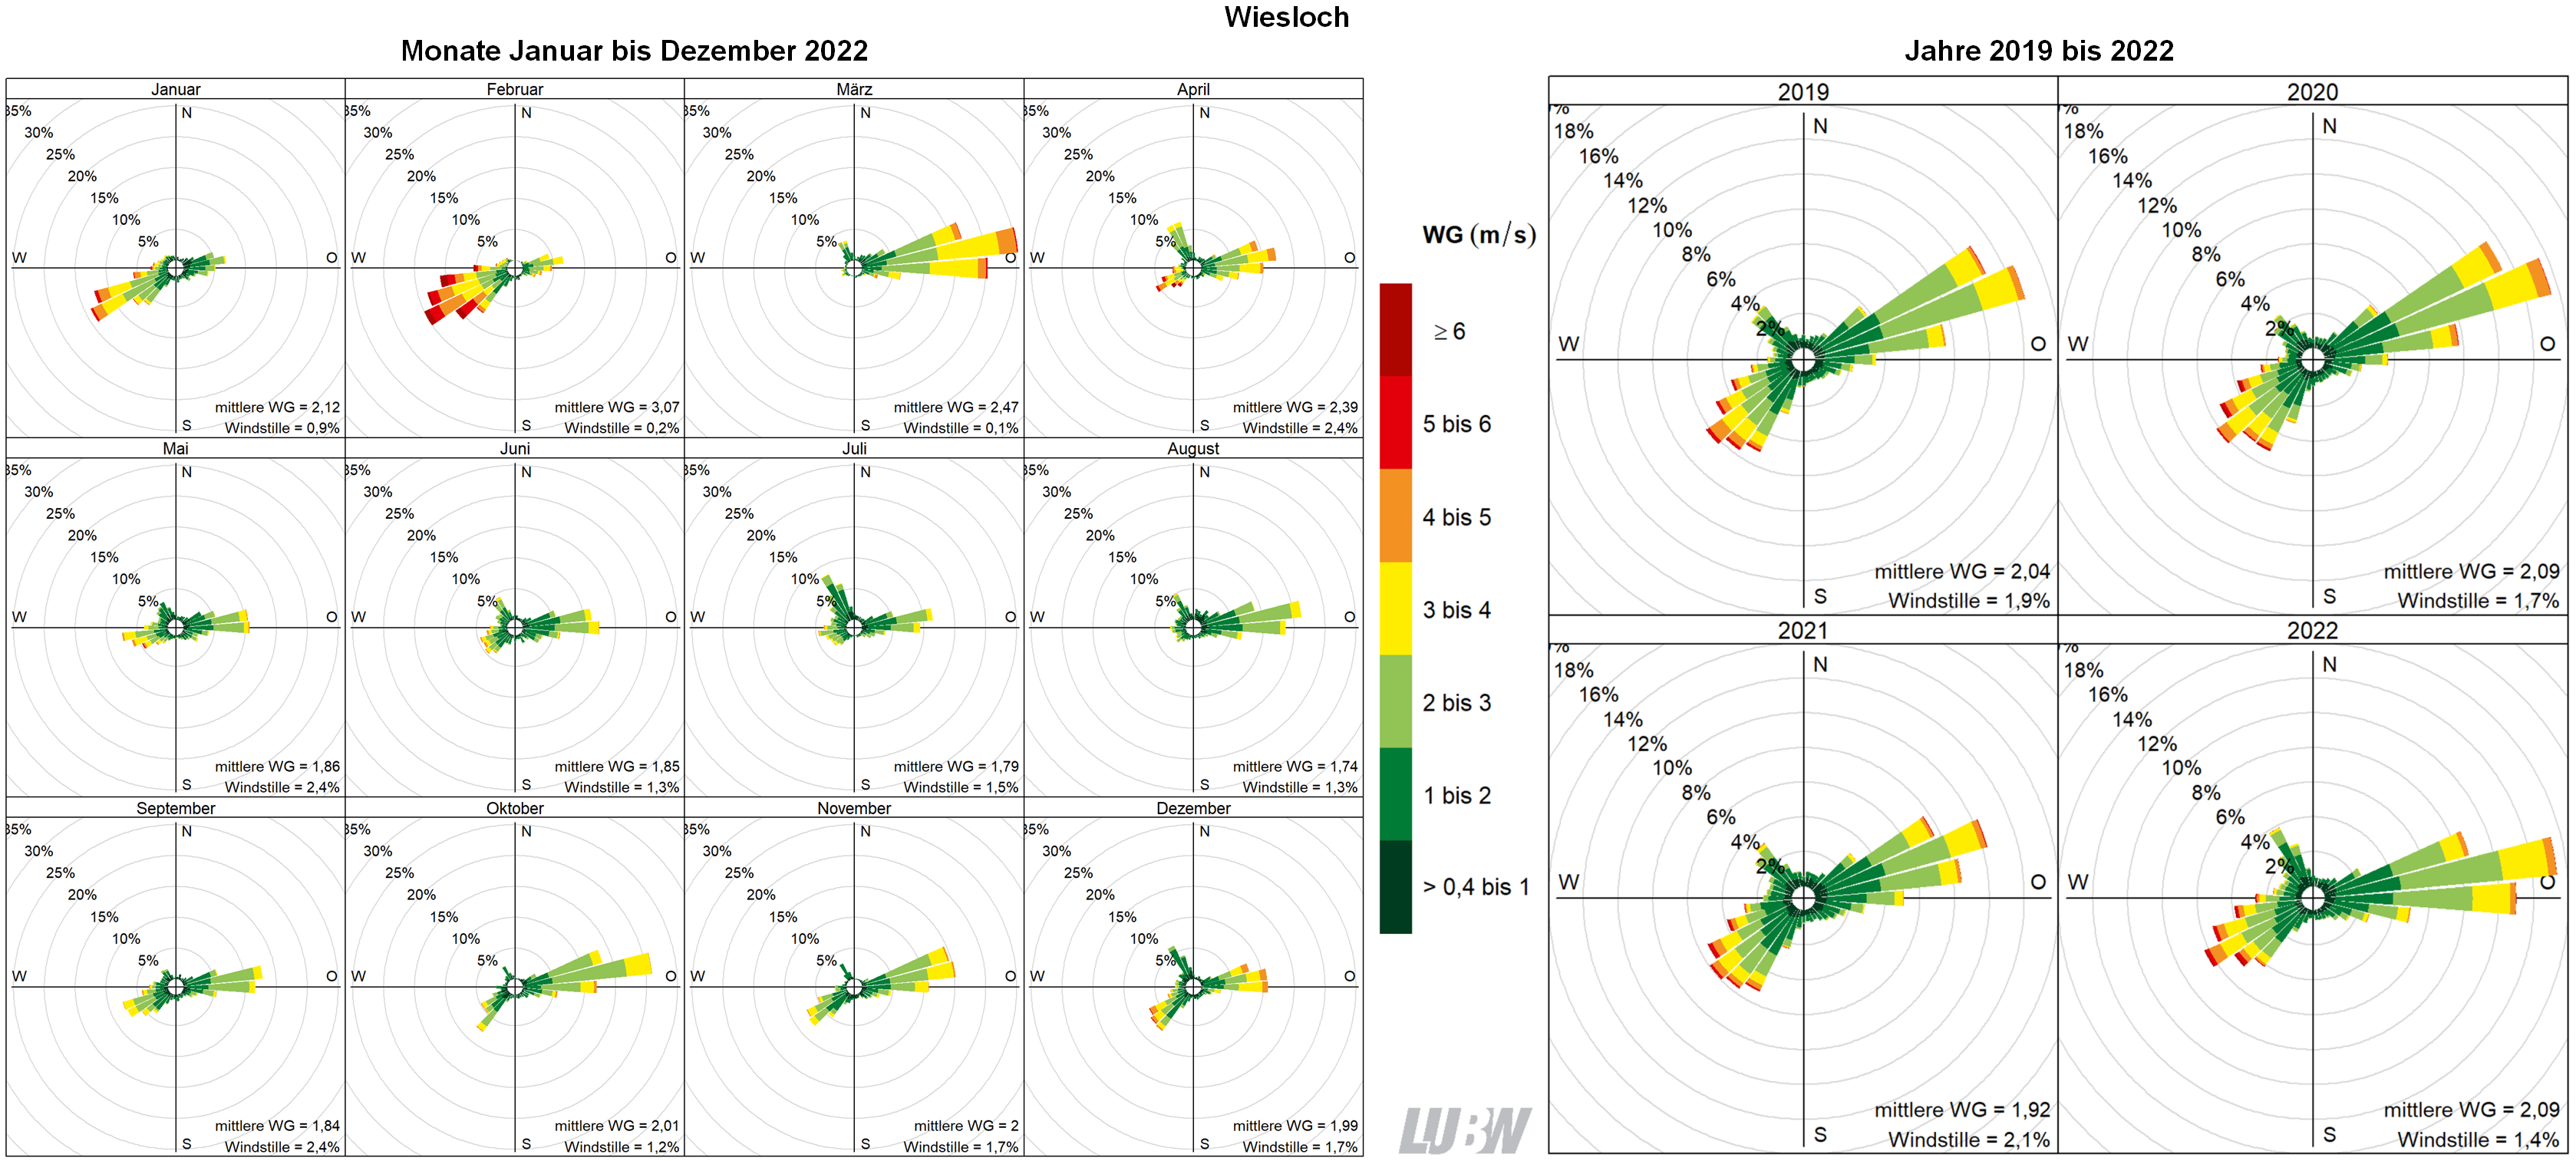  Mitttlere Windverteilung als Windrosen für die Monate Januar bis Dezember 2022 (linke Abbildung) sowie für die Jahre 2019 bis 2022 (rechte Abbildung) für den Standort Wiesloch. Weitere Informationen im umliegenden Text. 